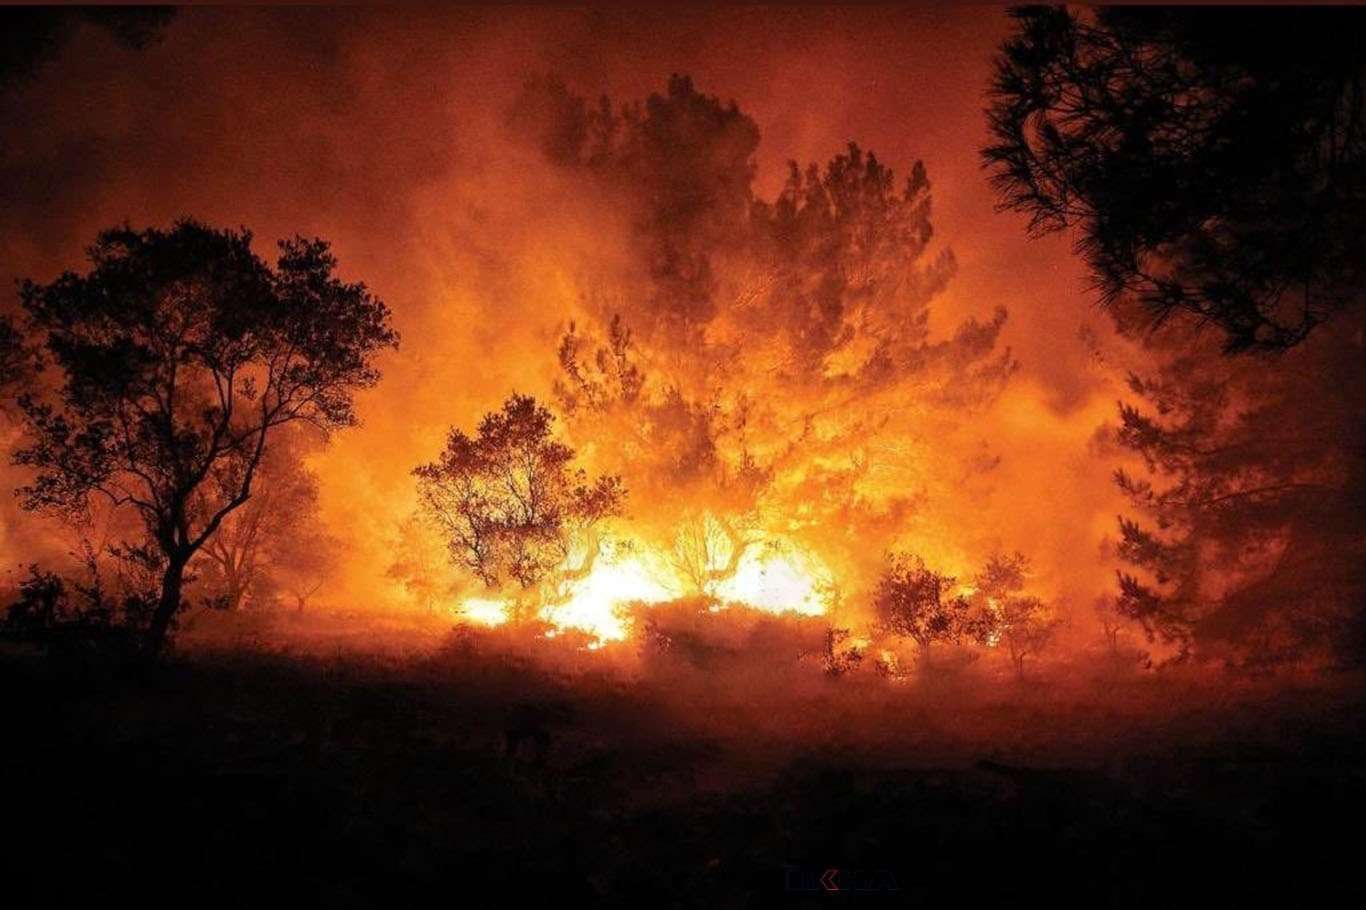 Antalya'da 3 ayrı noktada orman yangını